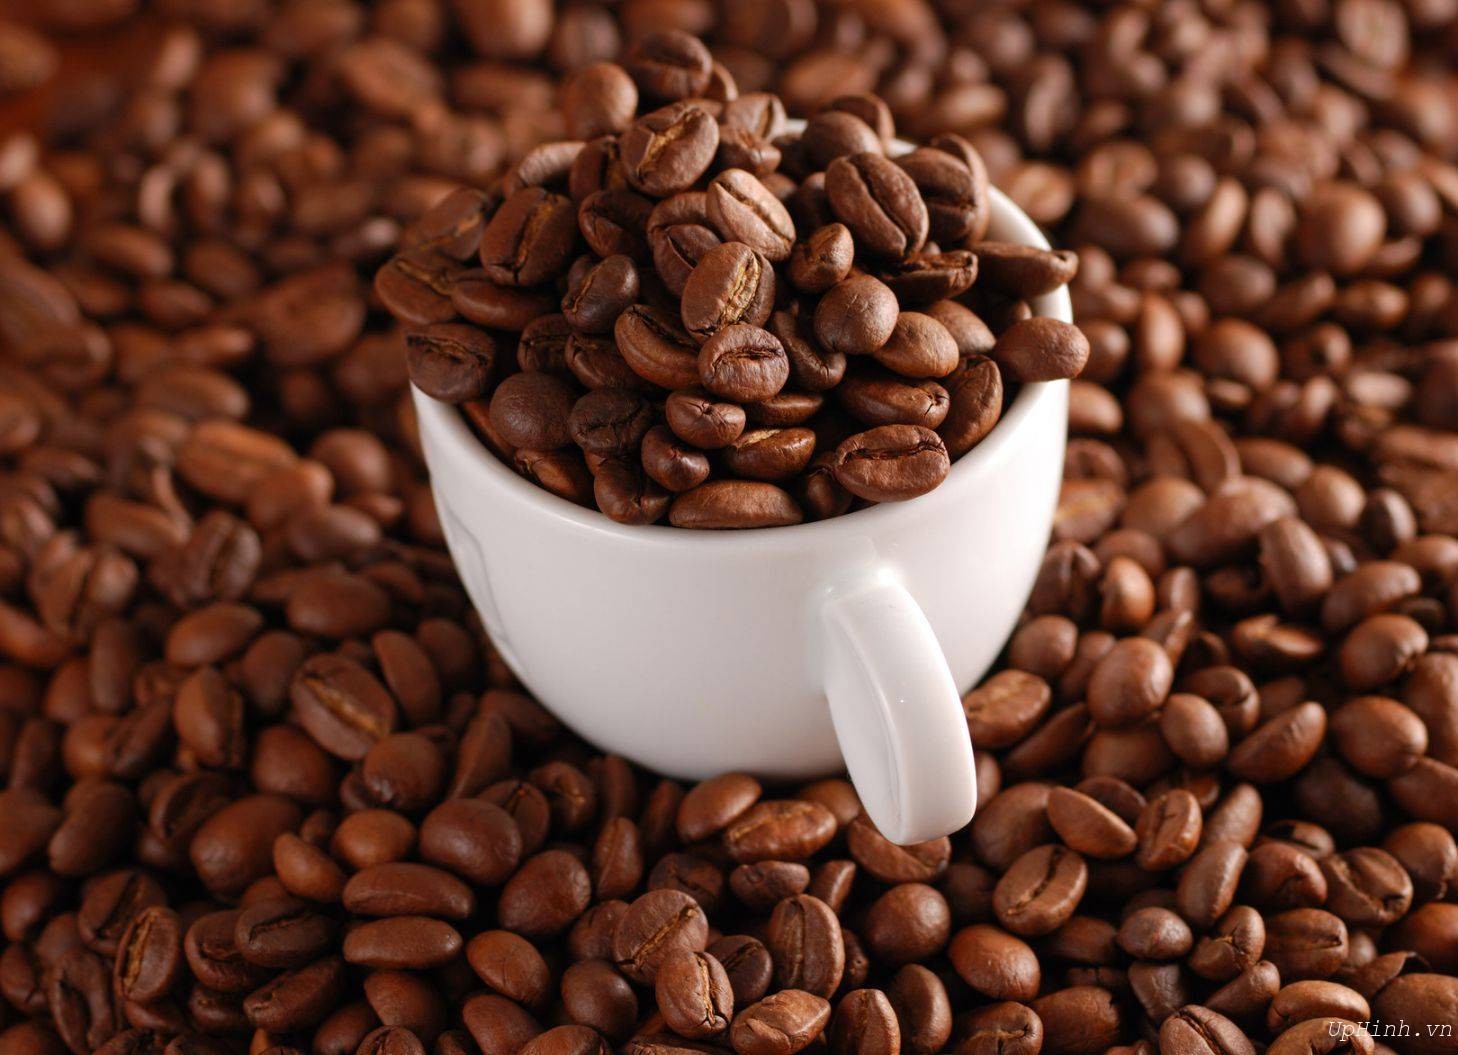 Chất lượng hạt cà phê lựa chọn thế nào